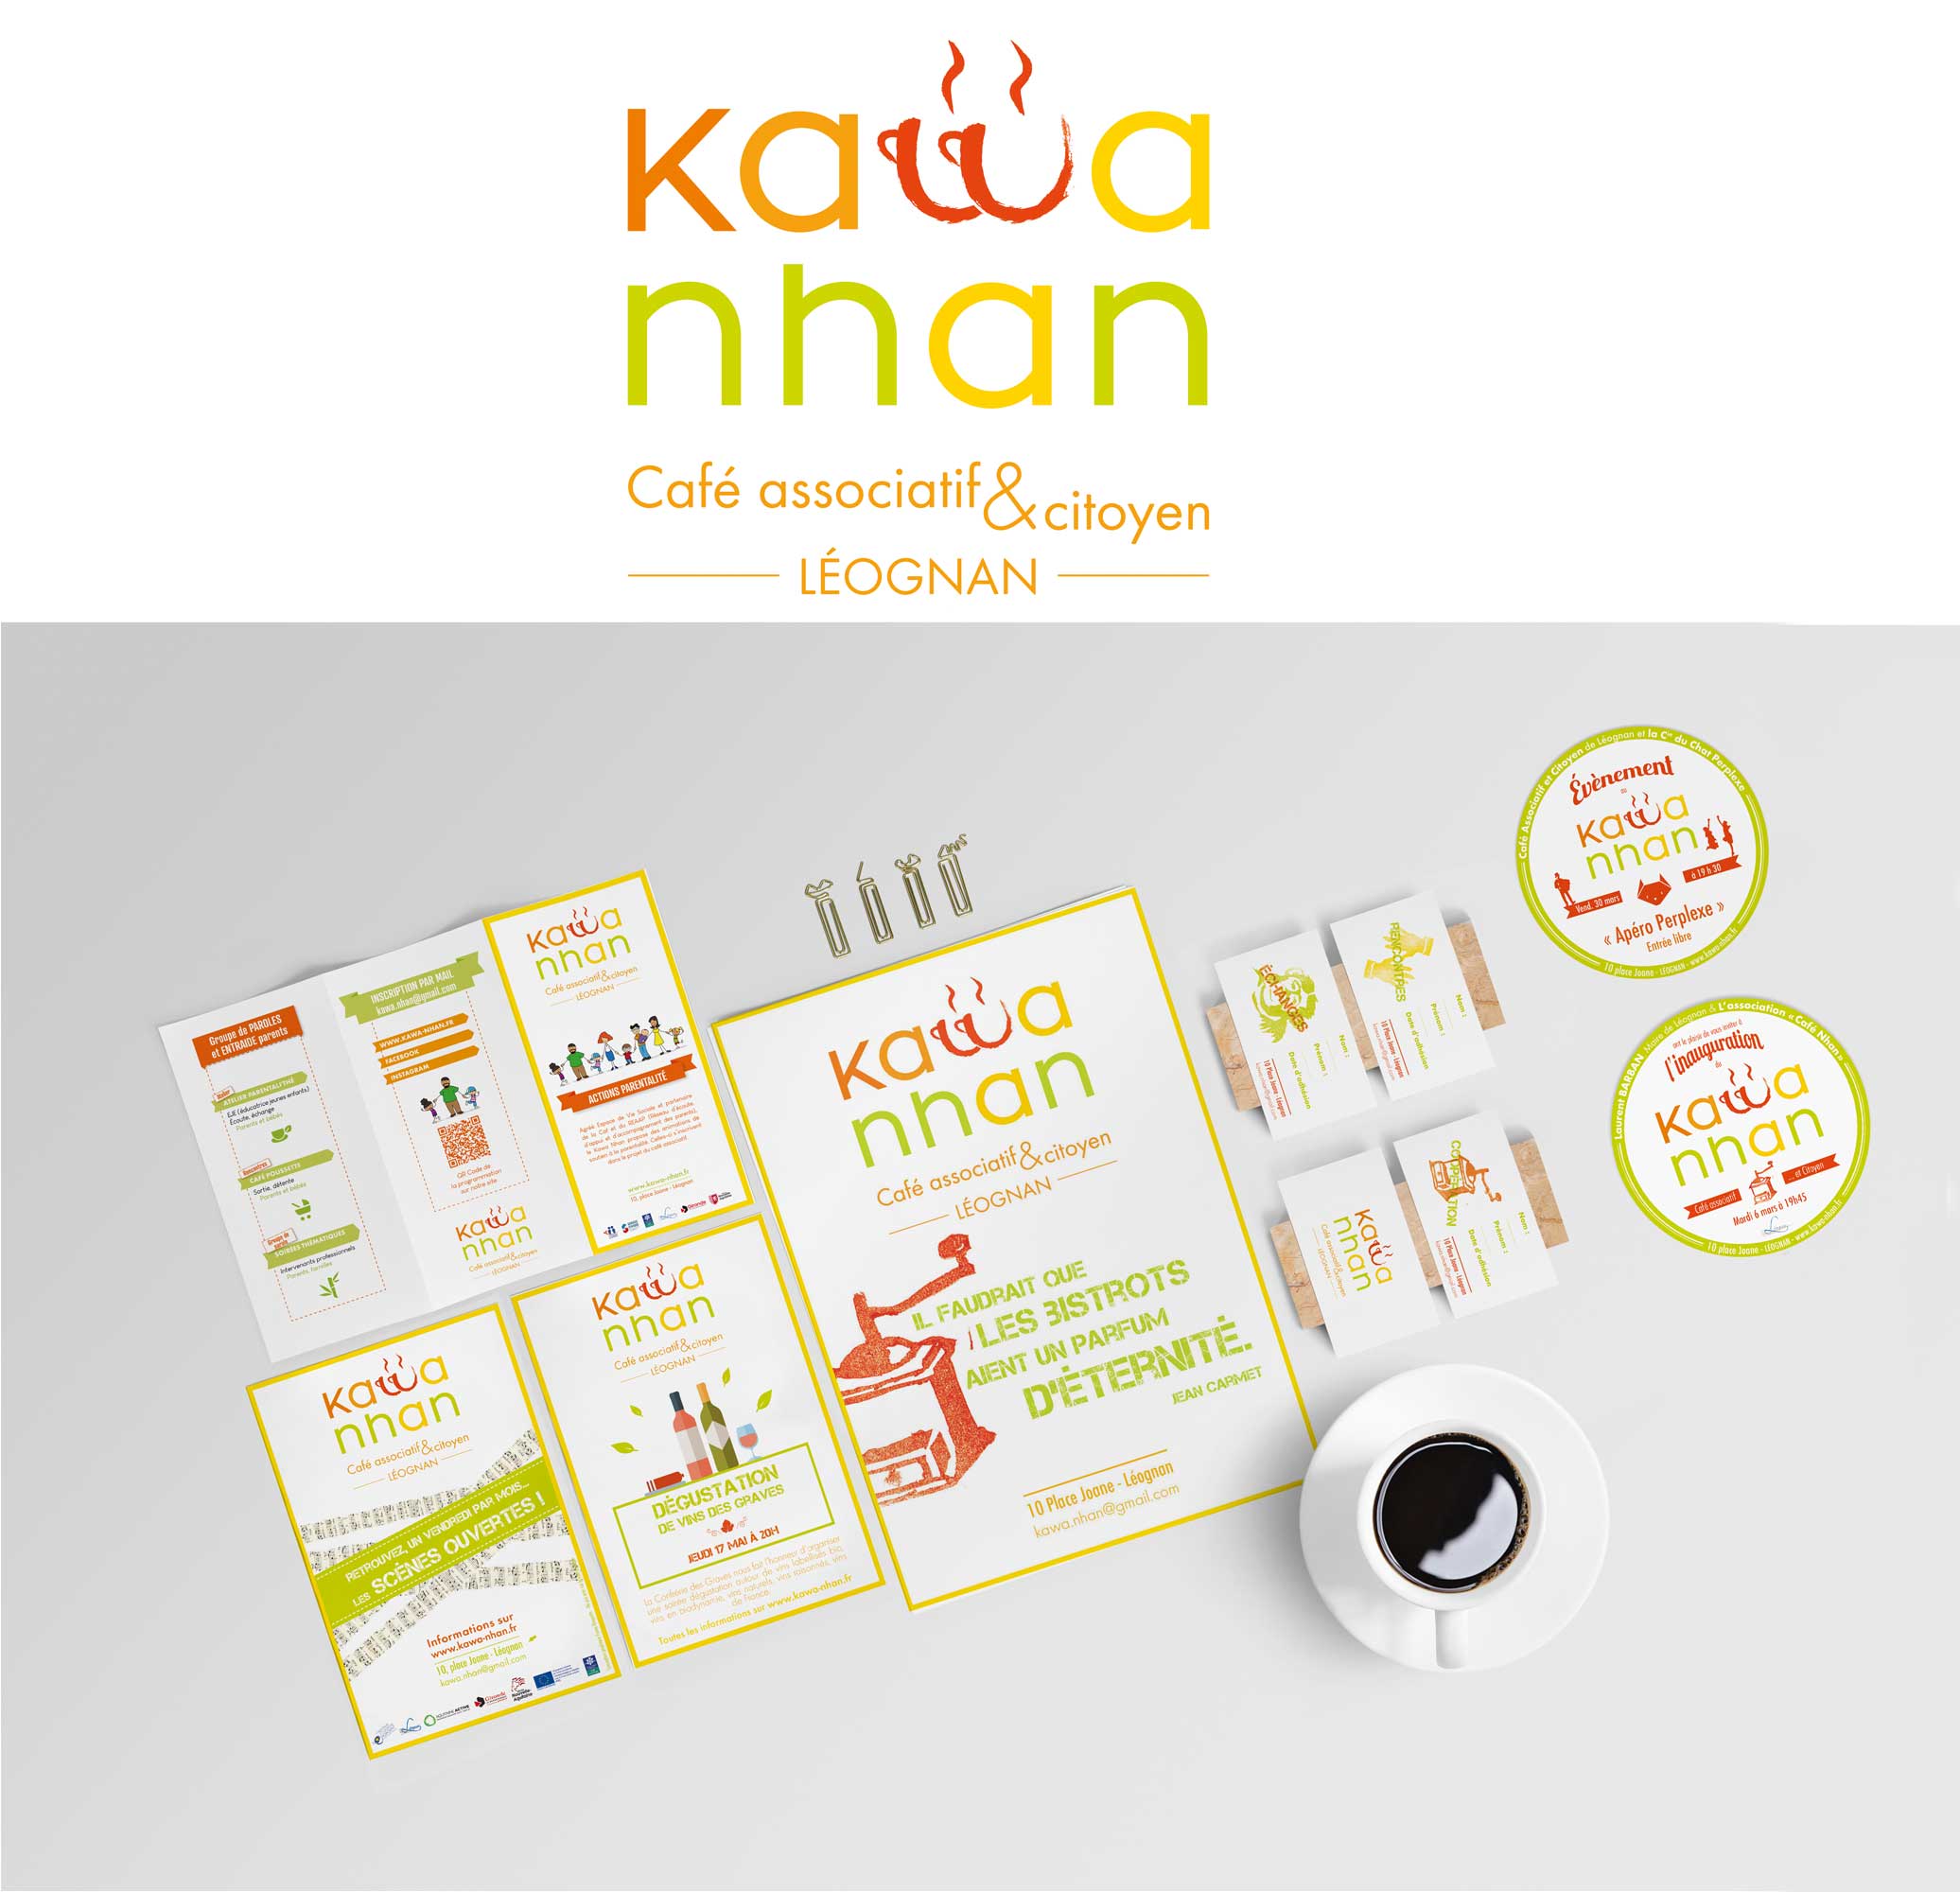 Logo et identité visuelle du café associatif Le Kawa Nhan